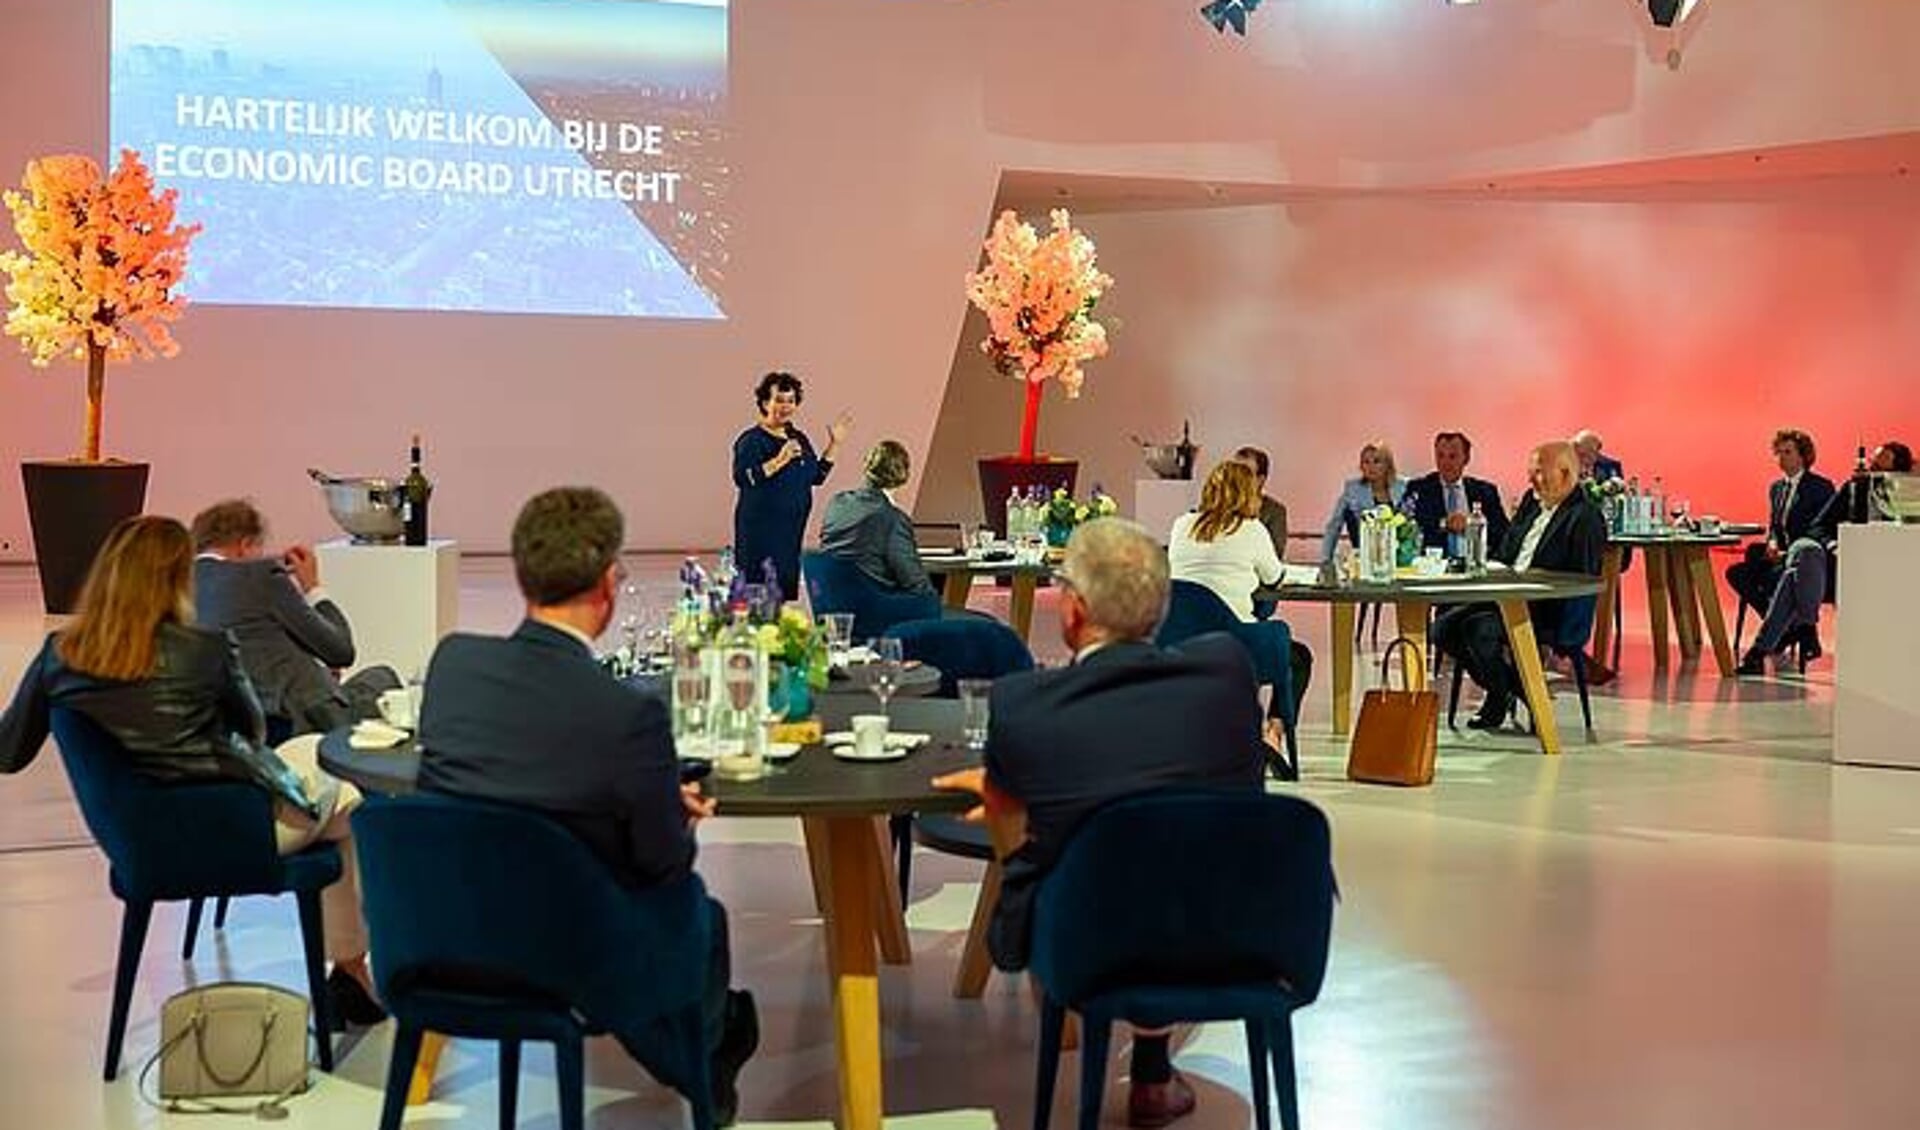 Dinerbijeenkomst van de Economic Board Utrecht waarbij Sharon Dijksma werd voorgedragen als voorzitter. Foto: Irene Vijfwinkel 